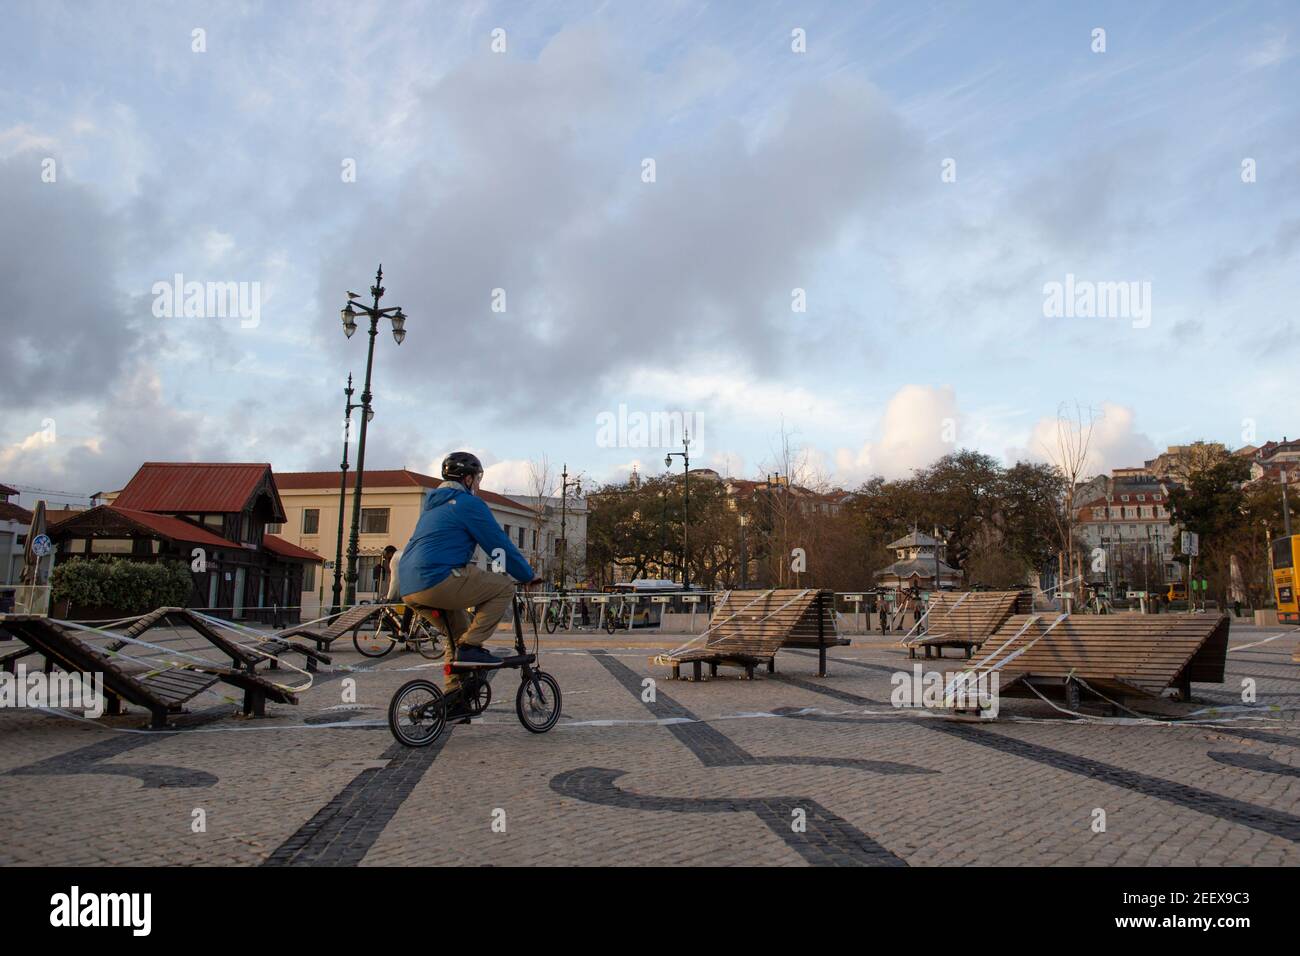 LISSABON, PORTUGAL - 3. FEBRUAR: Eine Person fährt am 3. Februar 2021 mit dem Fahrrad durch die Polizeilinien in Lissabon. Die Schließung von Schulen, und die daraus resultierende Stockfoto